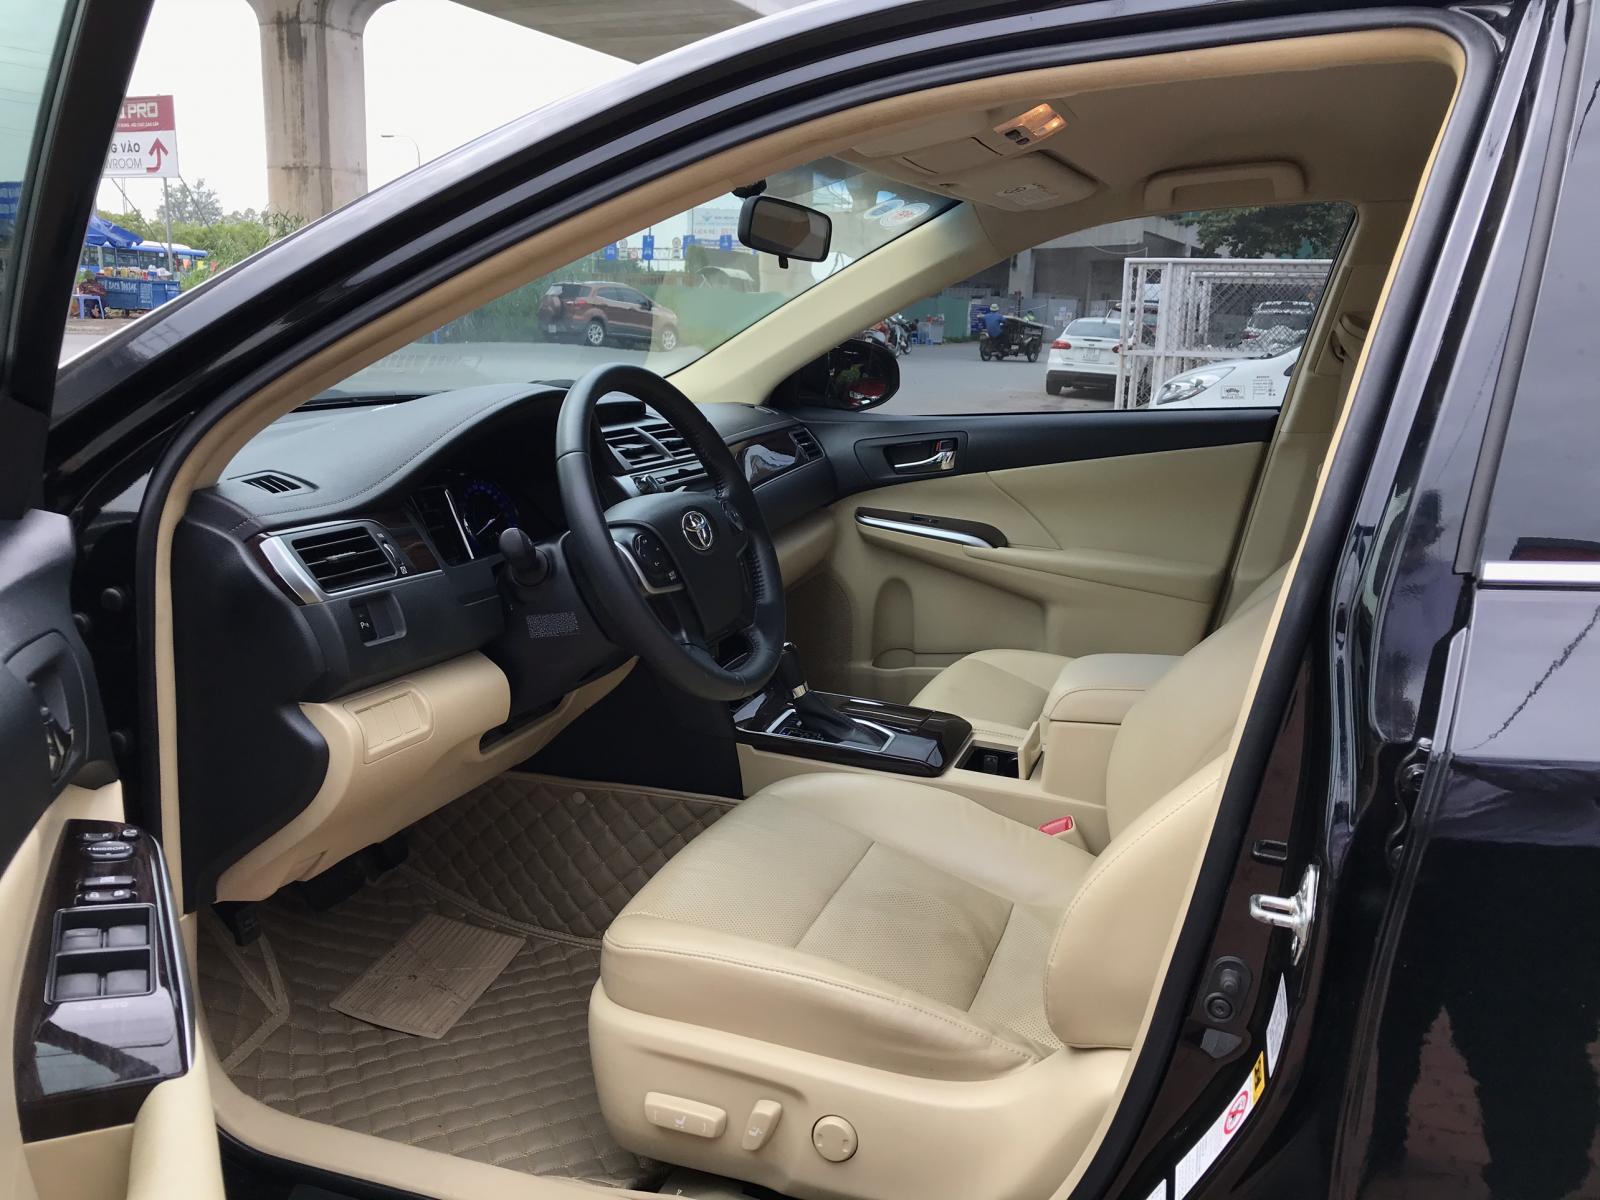 Toyota Camry 2.0E 2019 - Cần bán Toyota Camry 2.0E năm 2019, màu đen, xe nhập, giá ưu đãi